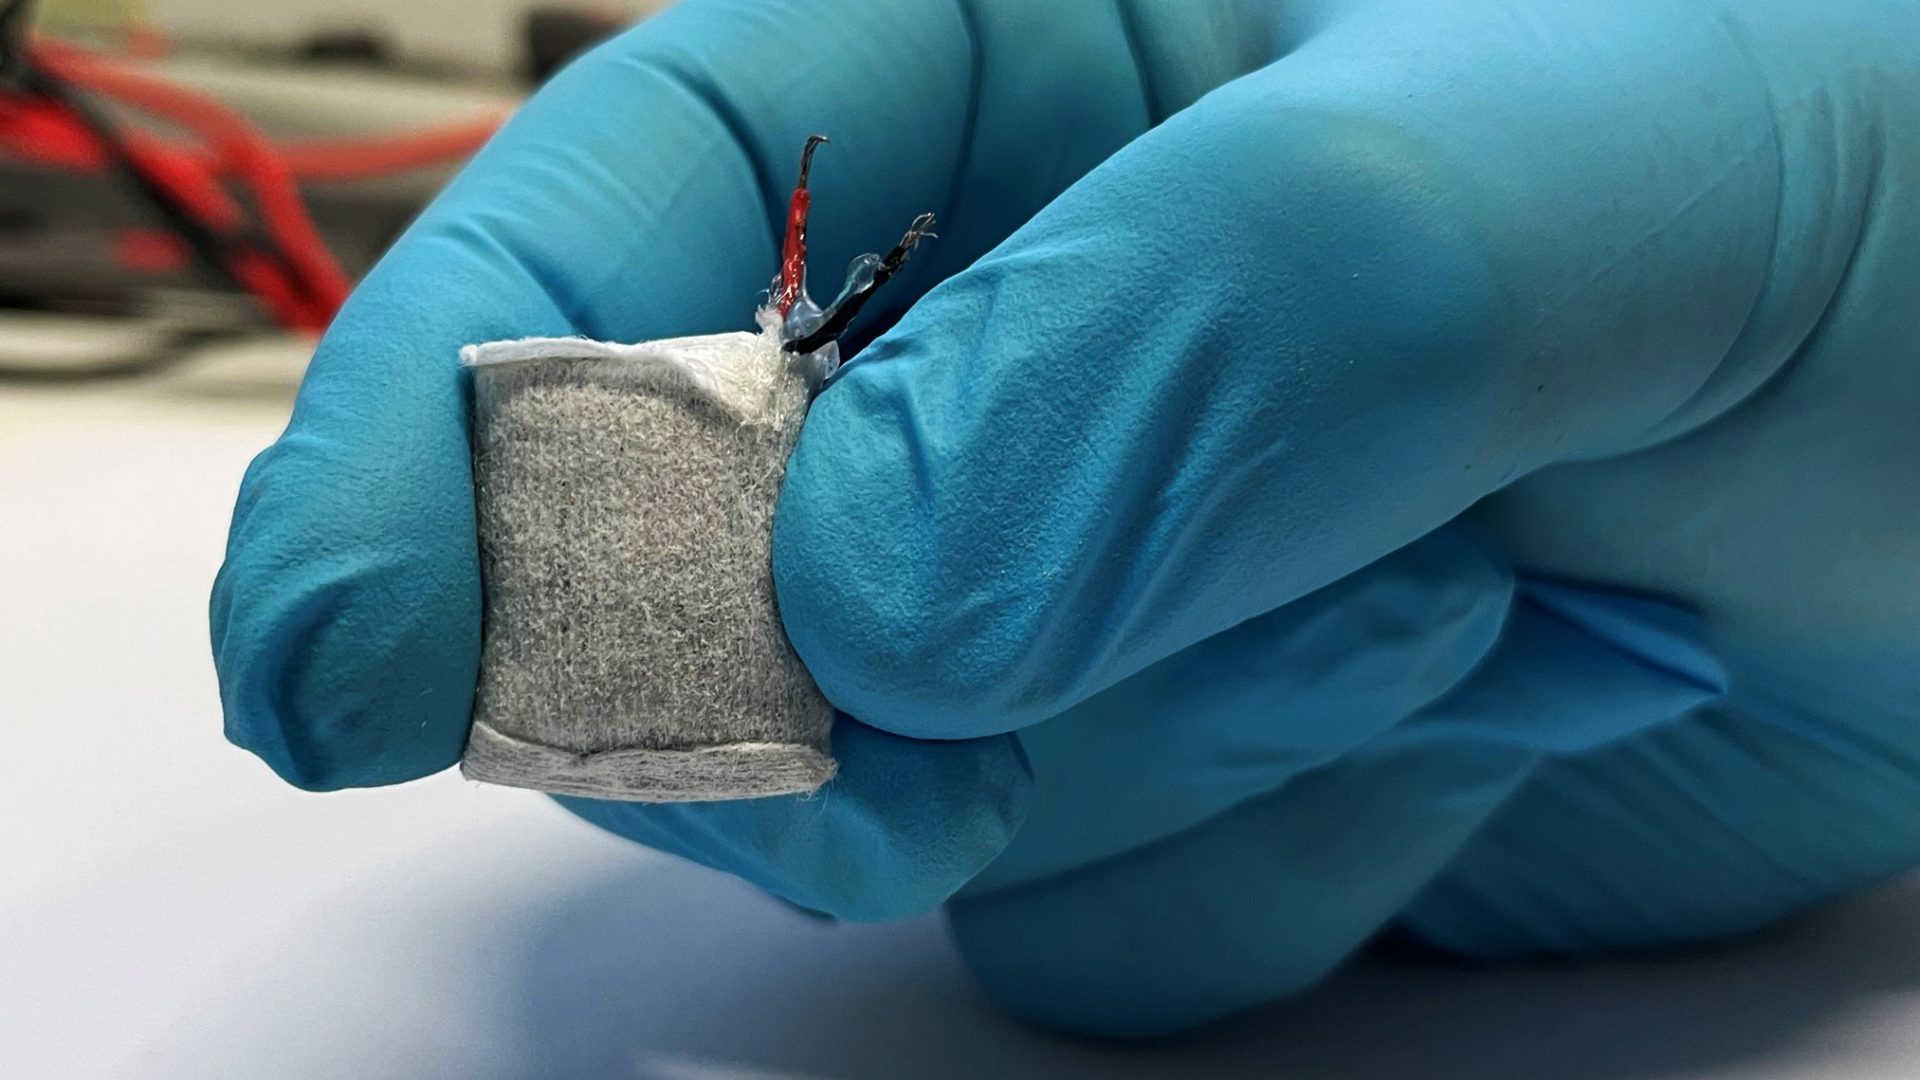 Forschende wollen Strom für medizinisch-technologische Geräte aus Blutzucker erzeugen